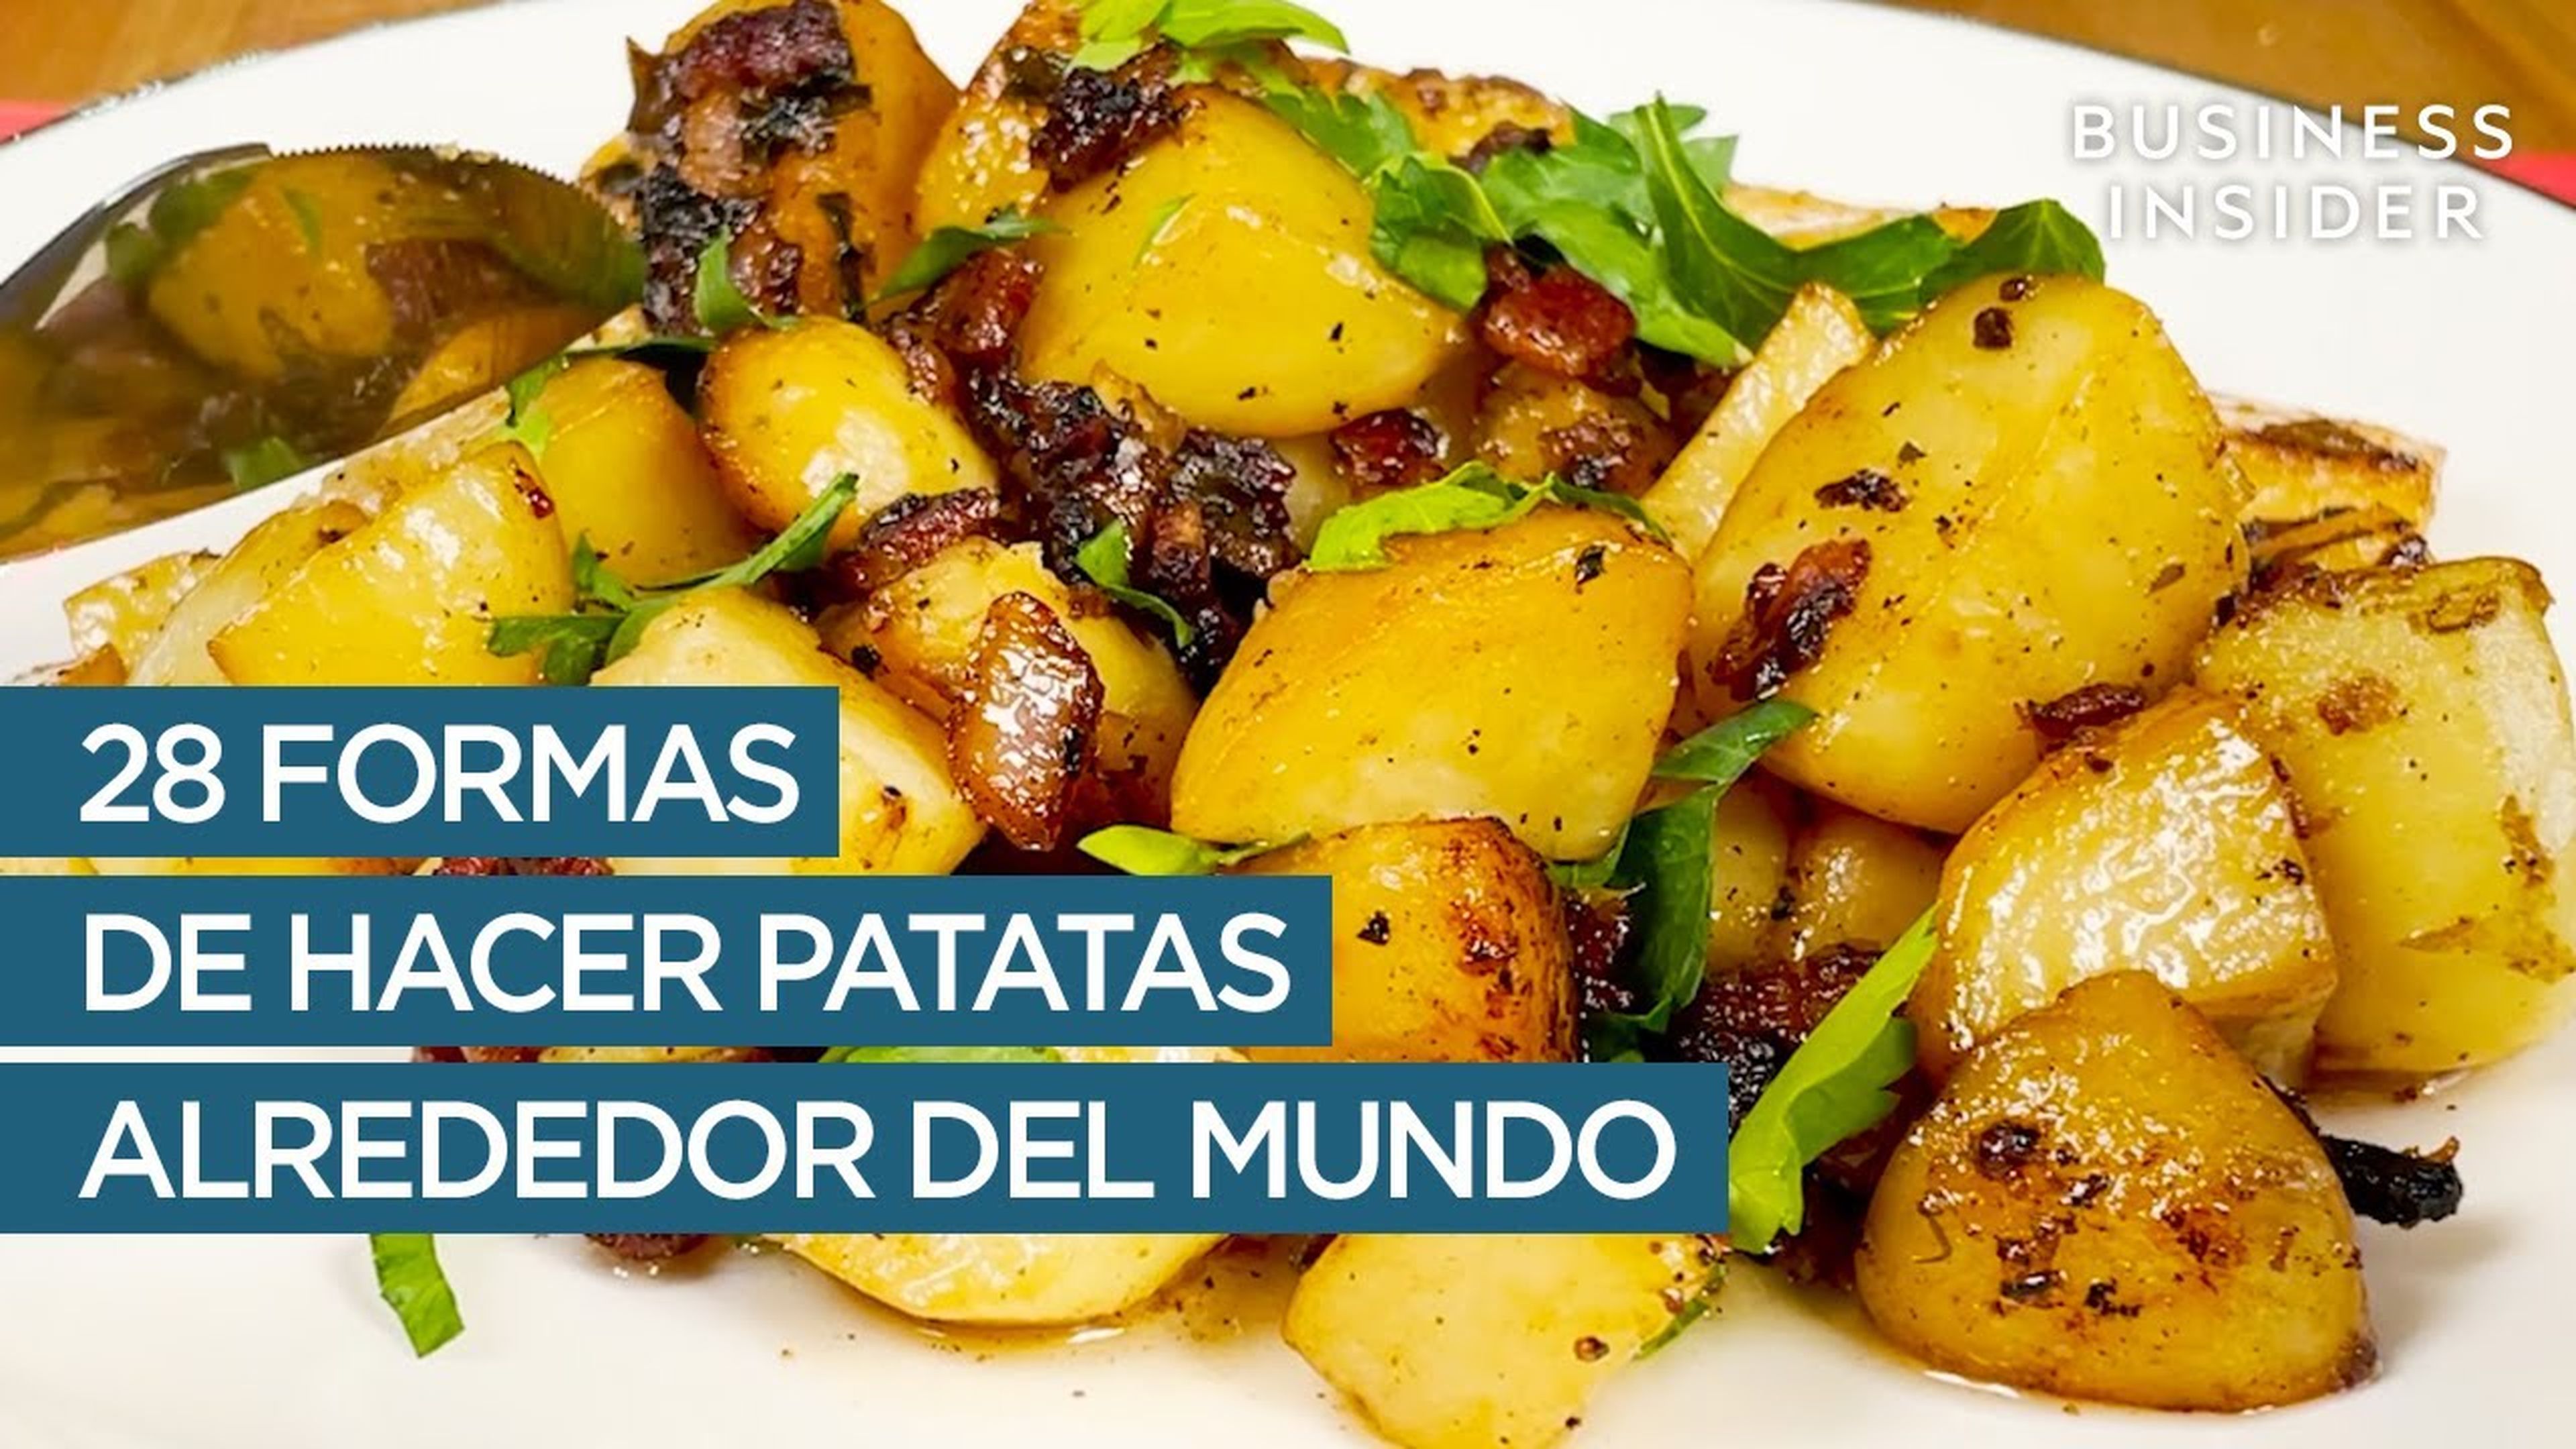 28 formas de hacer patatas alrededor del mundo